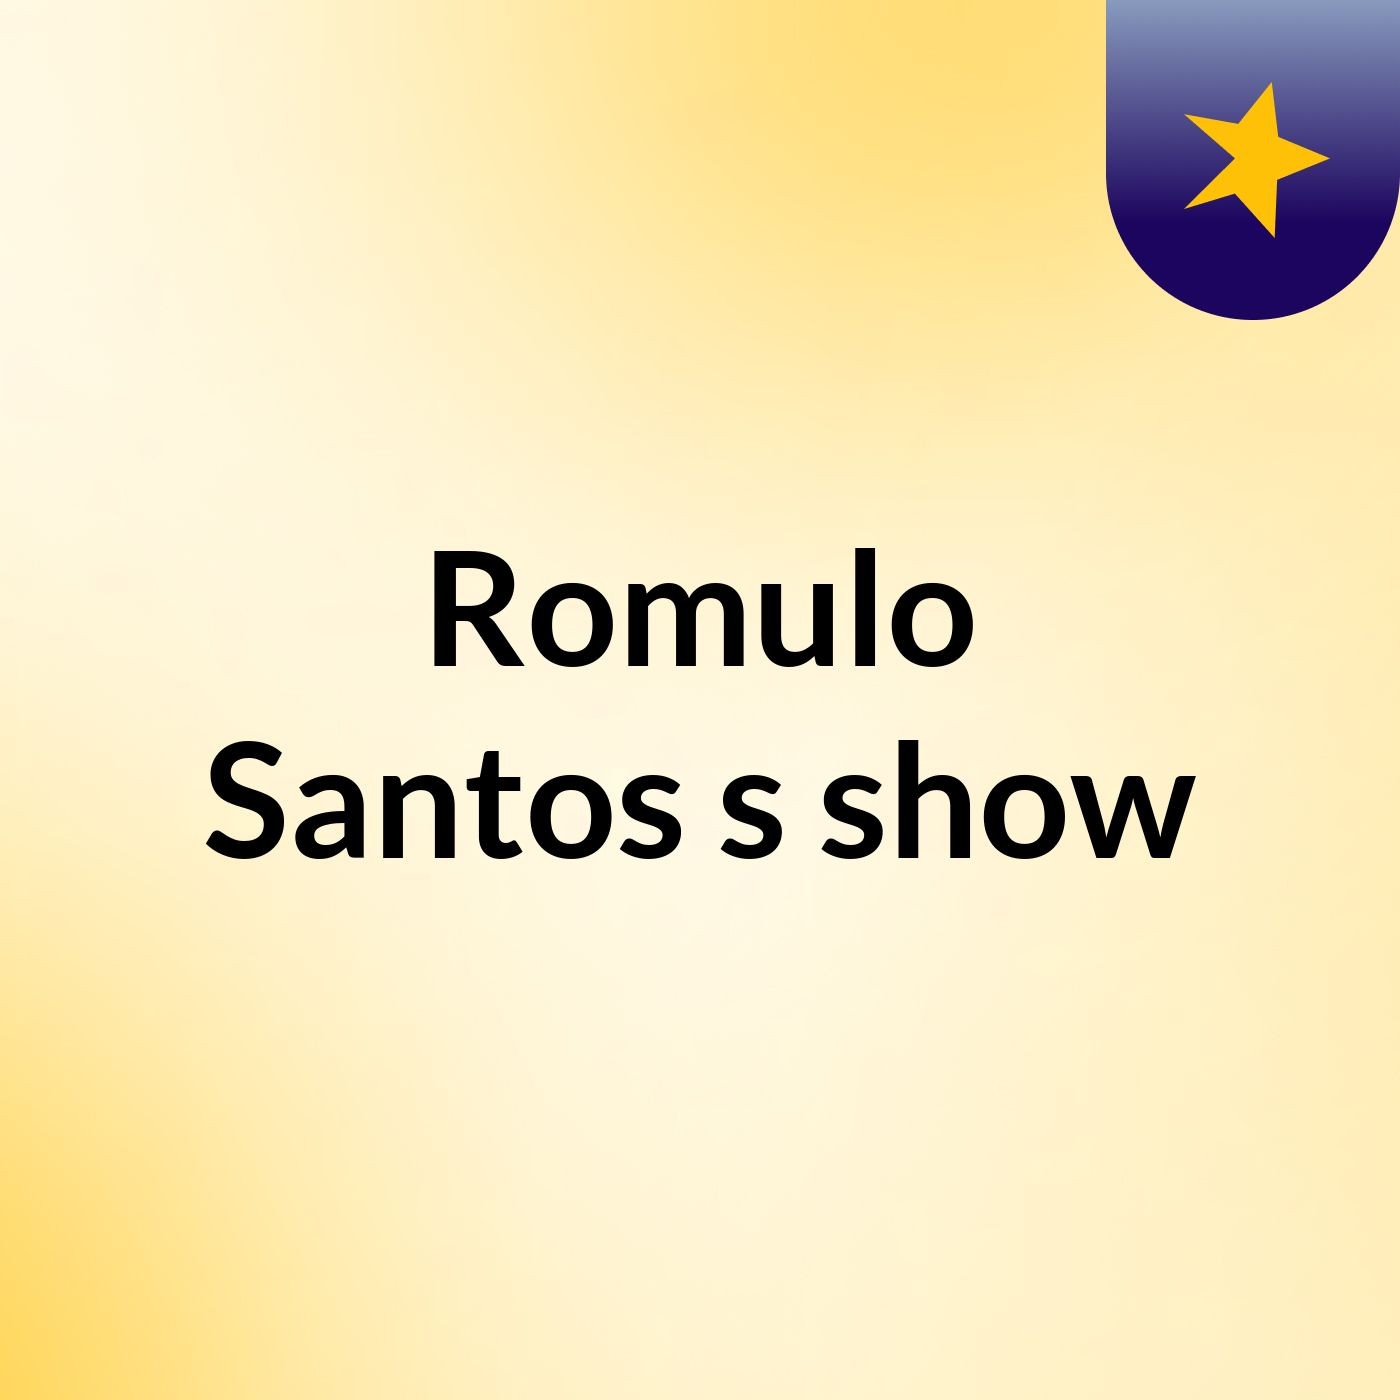 Romulo Santos's show